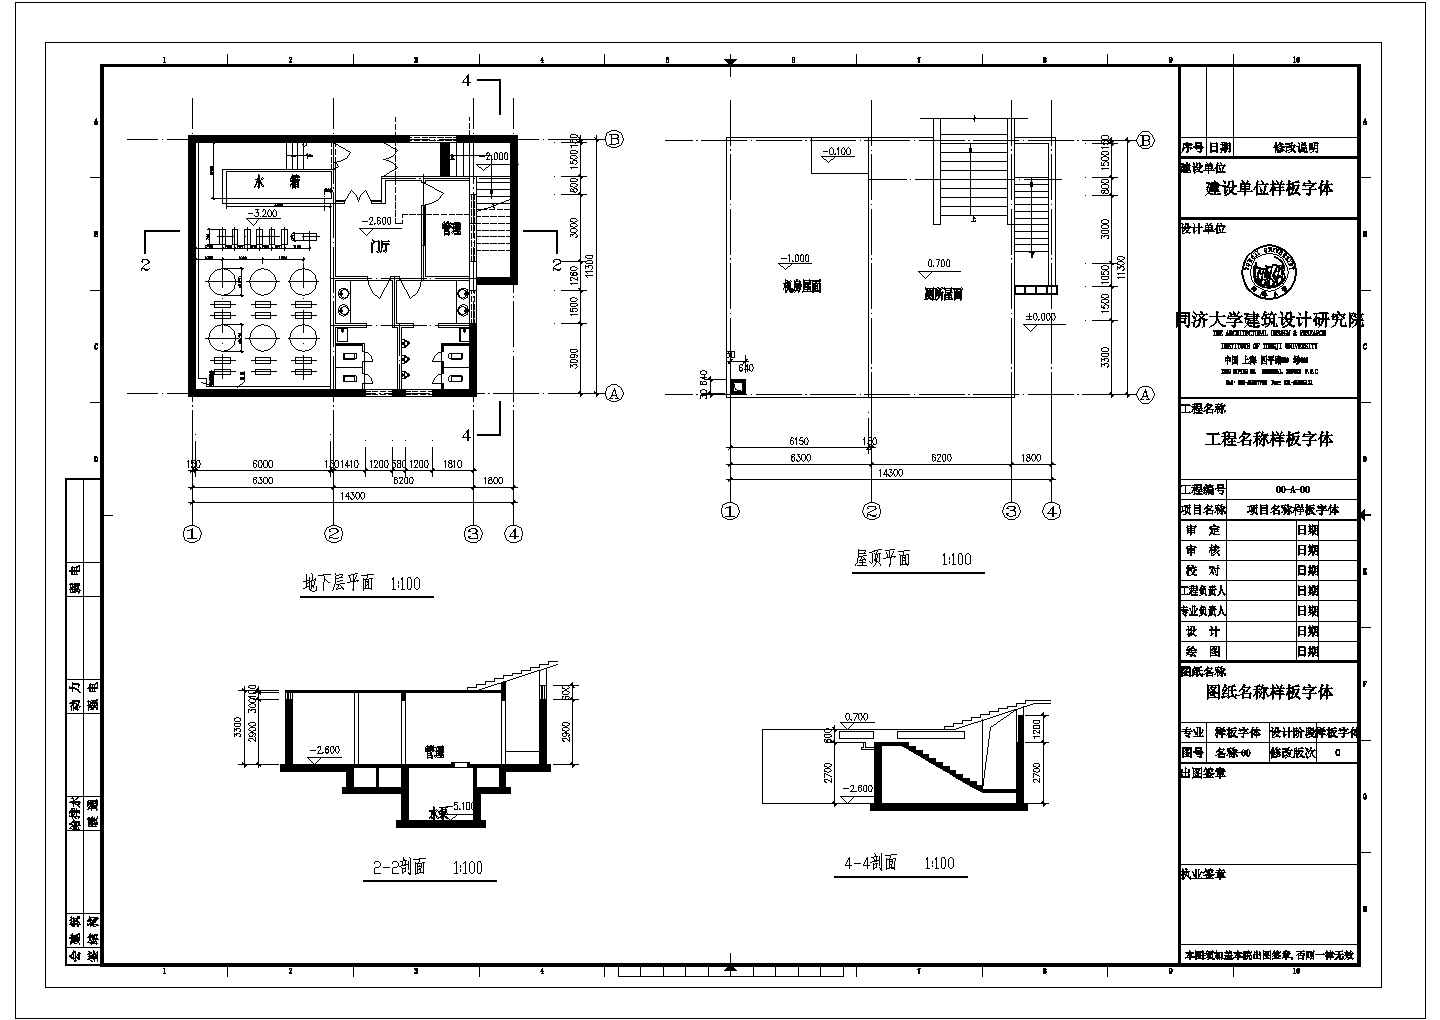 【桂林】榕杉湖景区建设指挥部地下室b面建设施工图